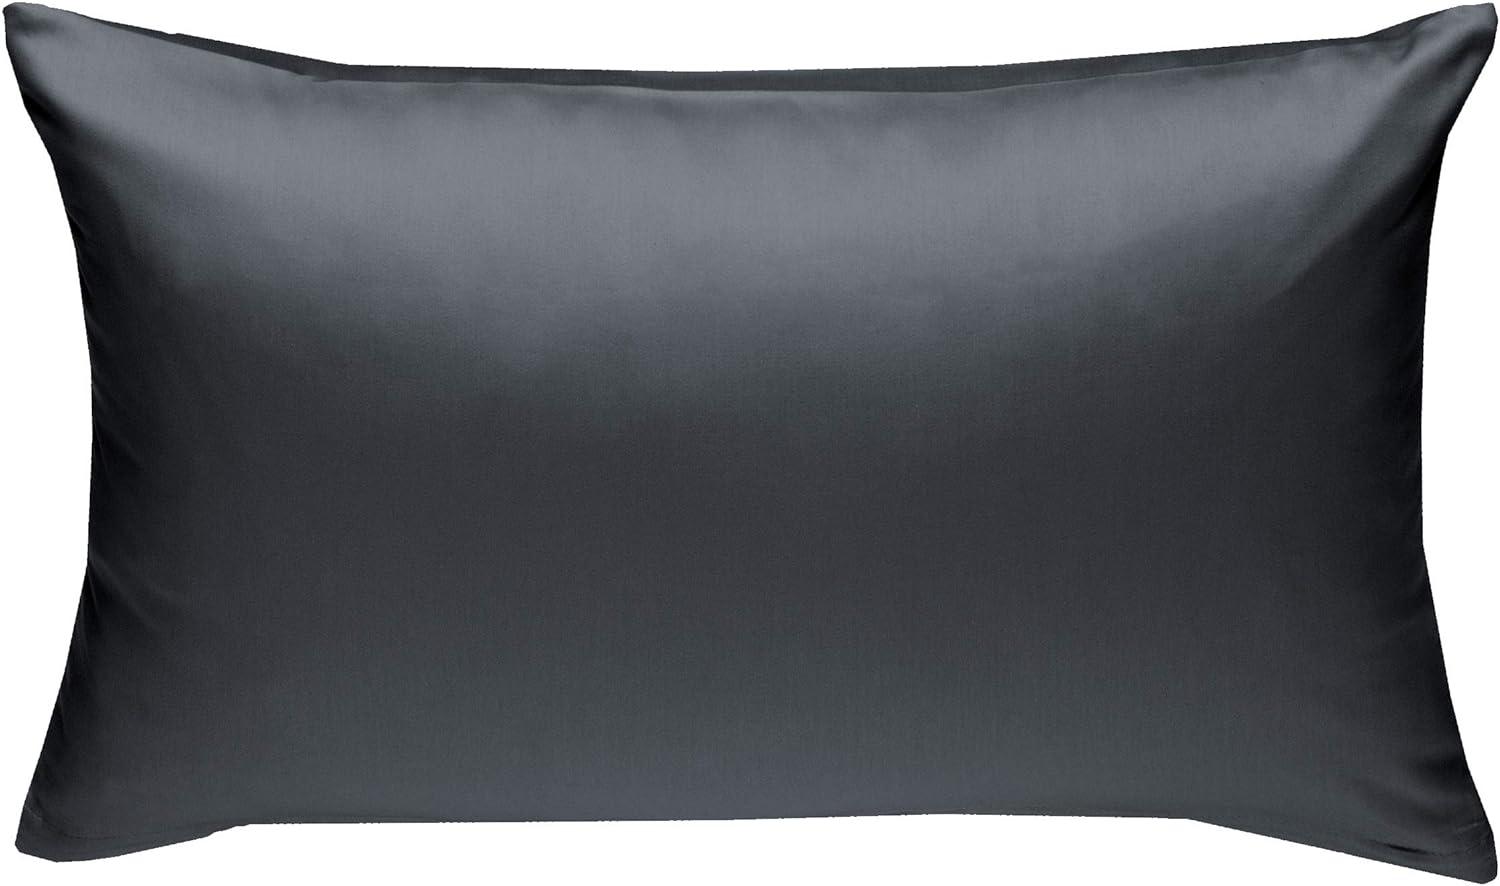 Bettwaesche-mit-Stil Mako-Satin / Baumwollsatin Bettwäsche uni / einfarbig anthrazit Kissenbezug 50x70 cm Bild 1